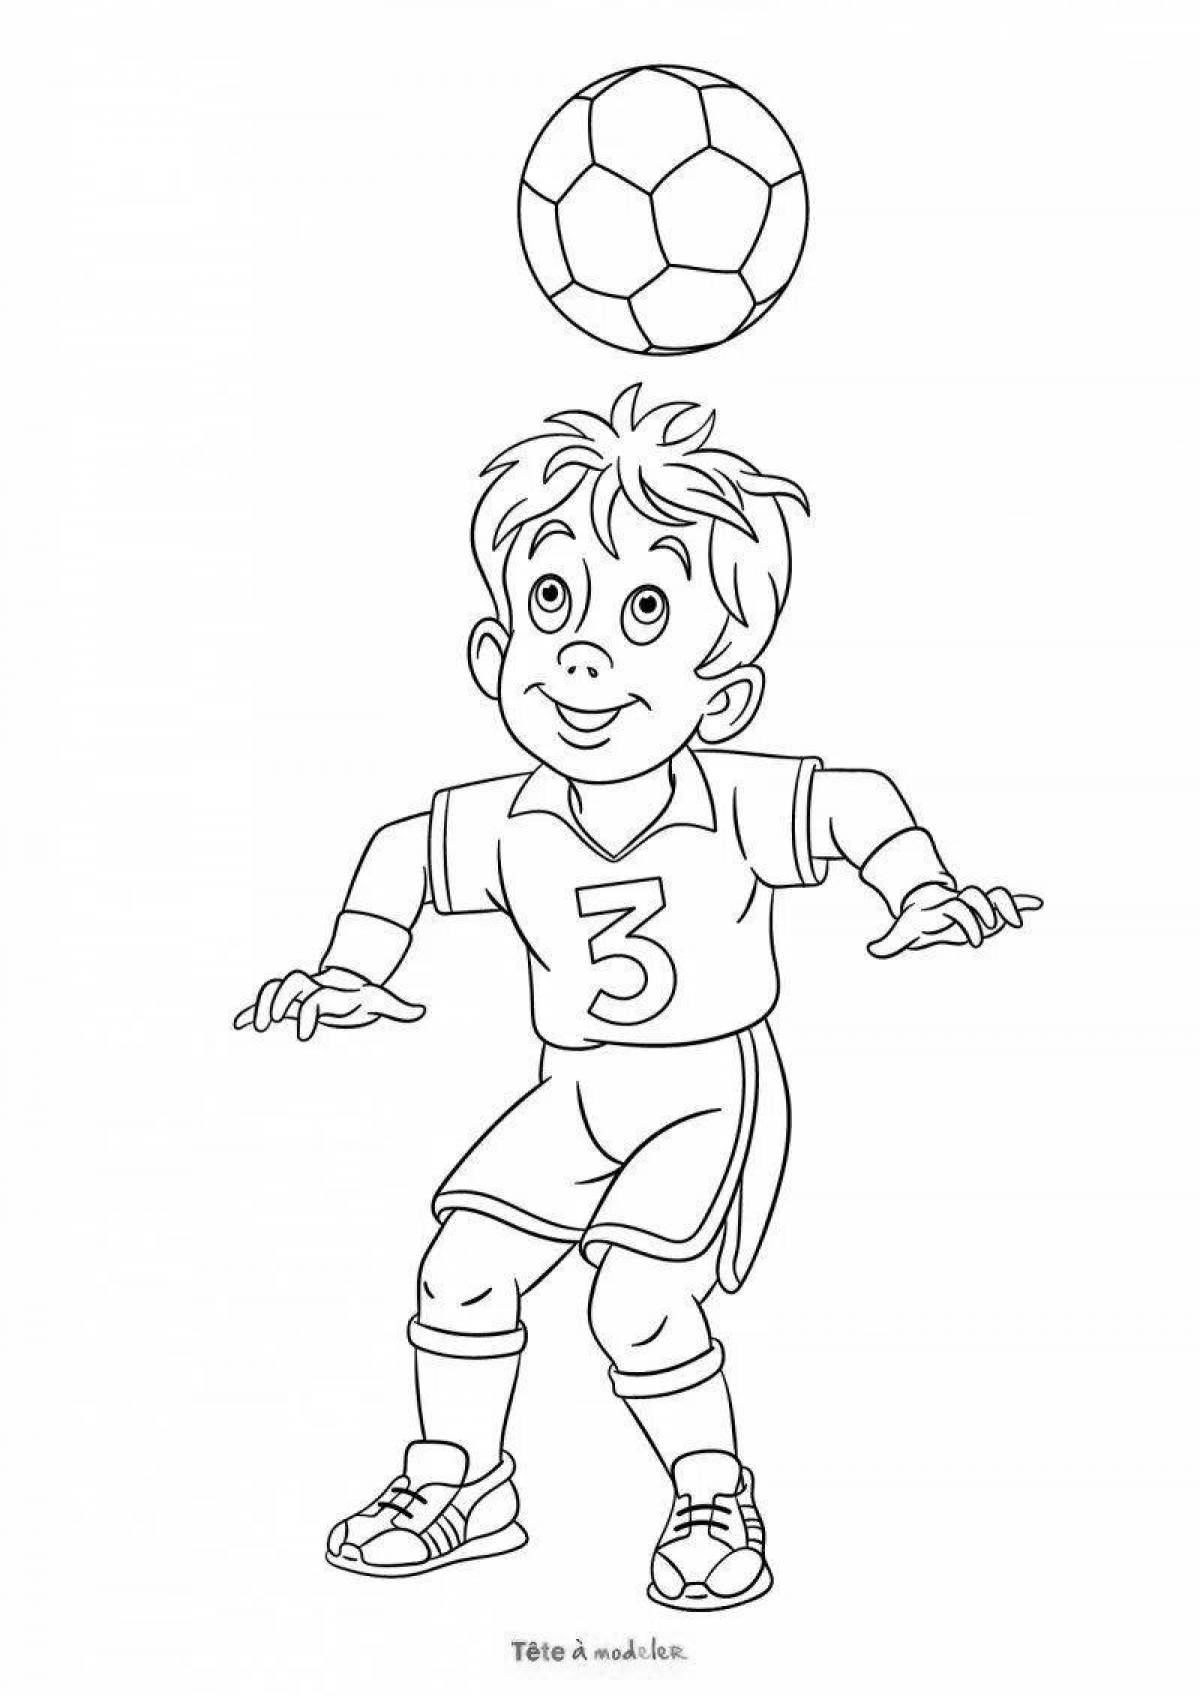 Очаровательная раскраска футболиста для детей